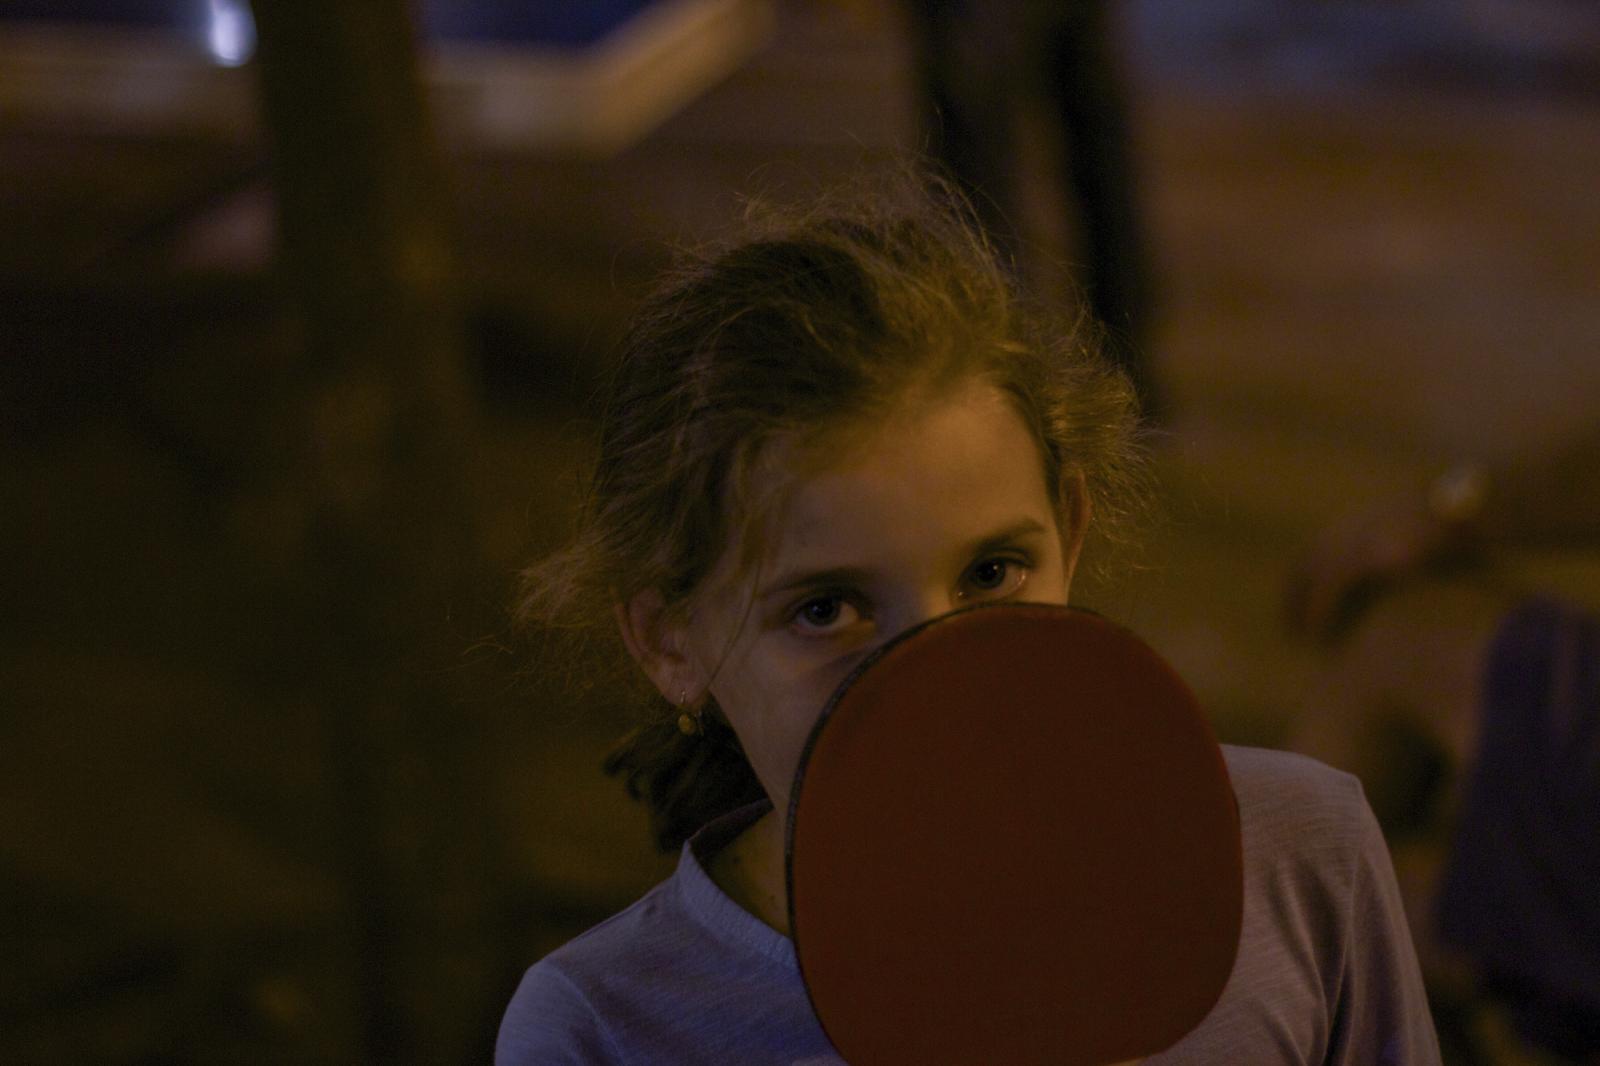  2 - Barcelona Ping Pong 